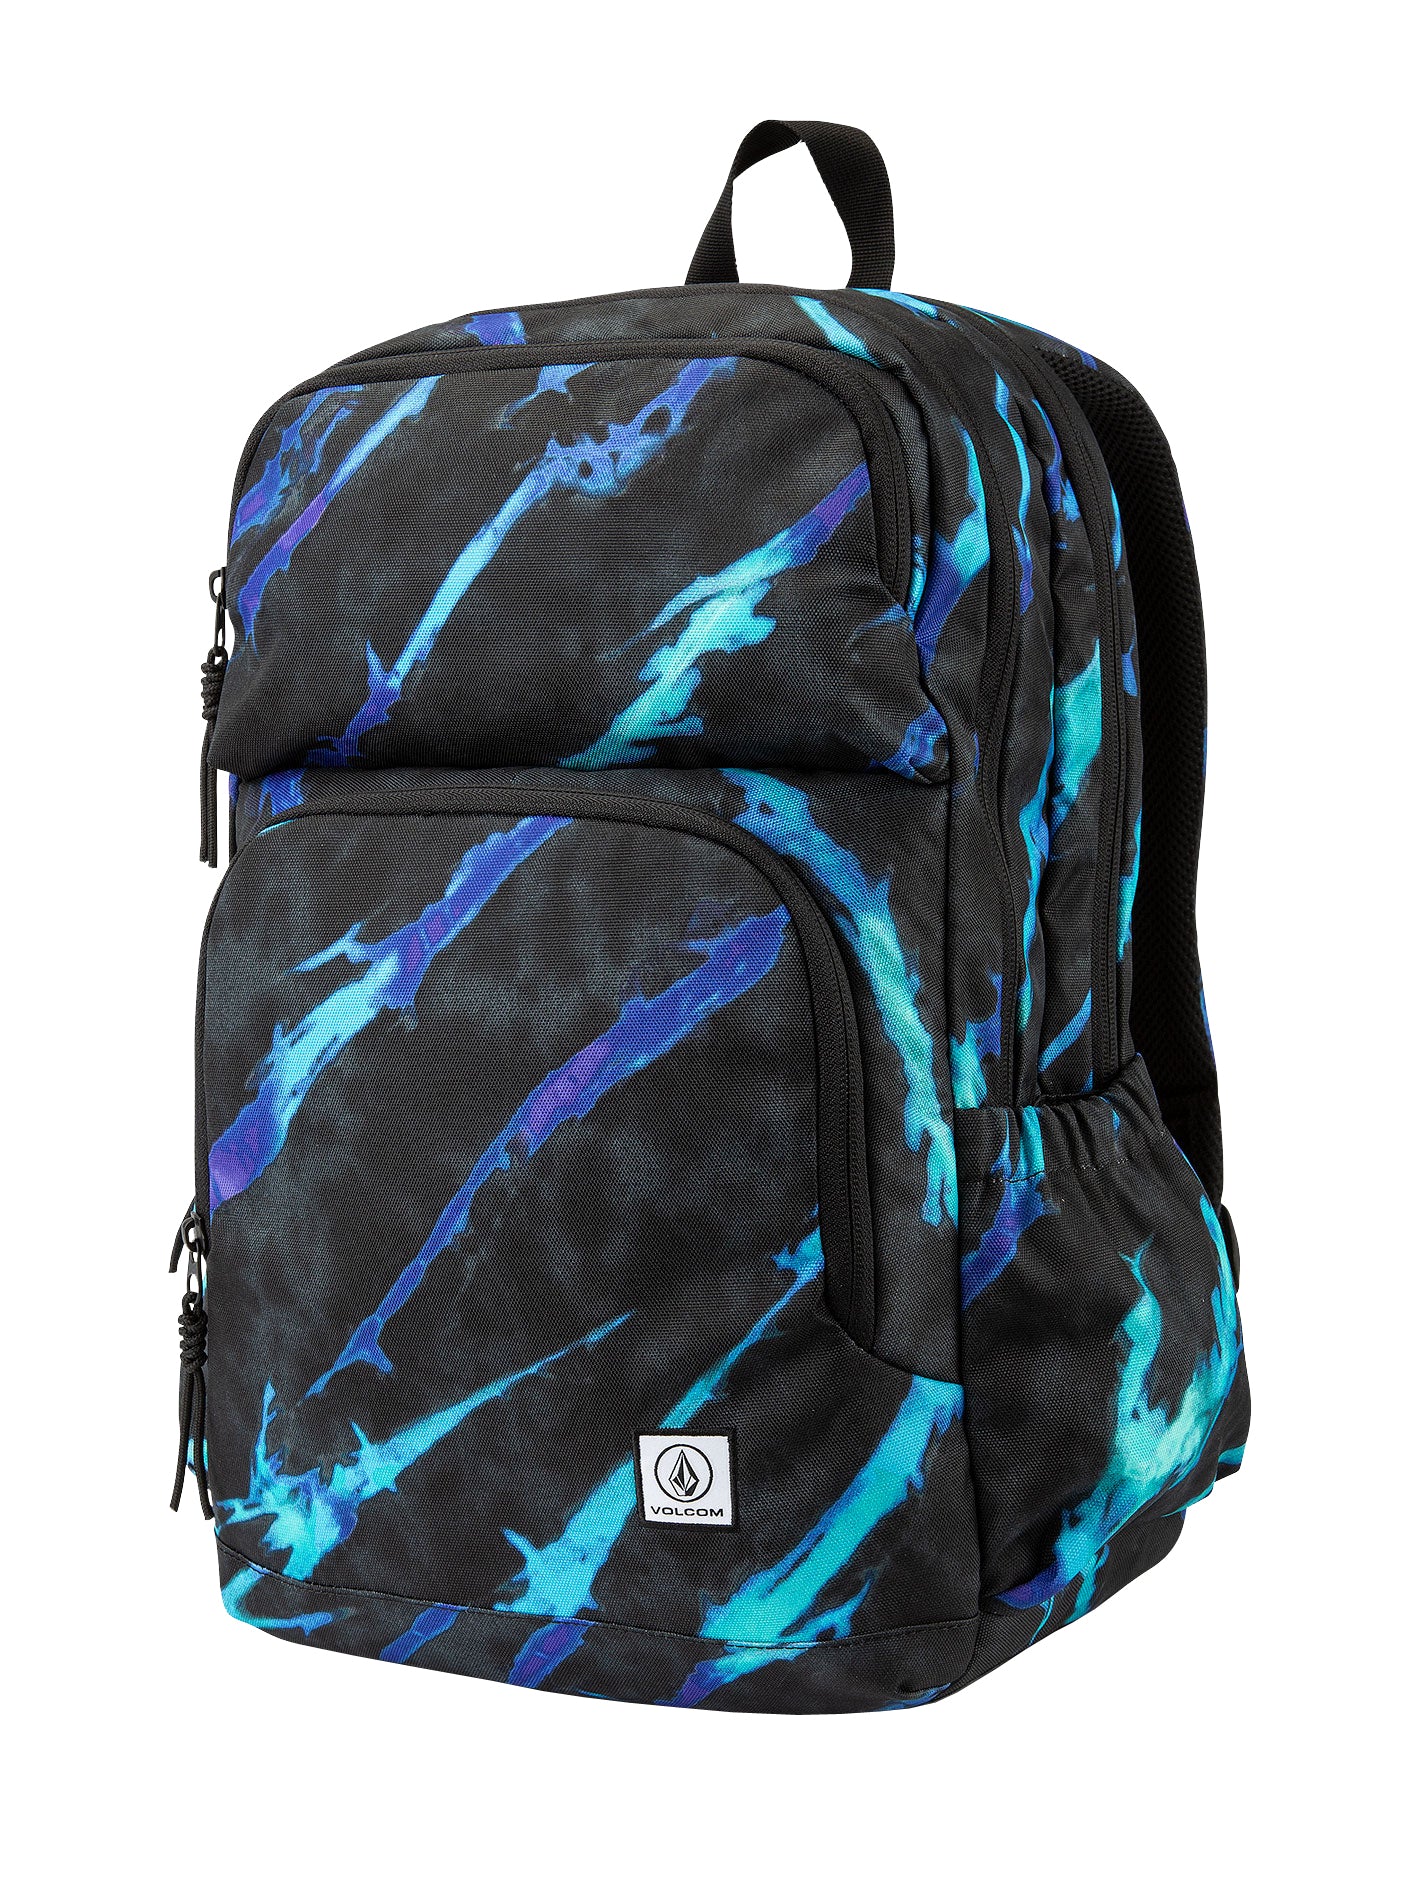 Volcom Roamer Backpack TDY OS